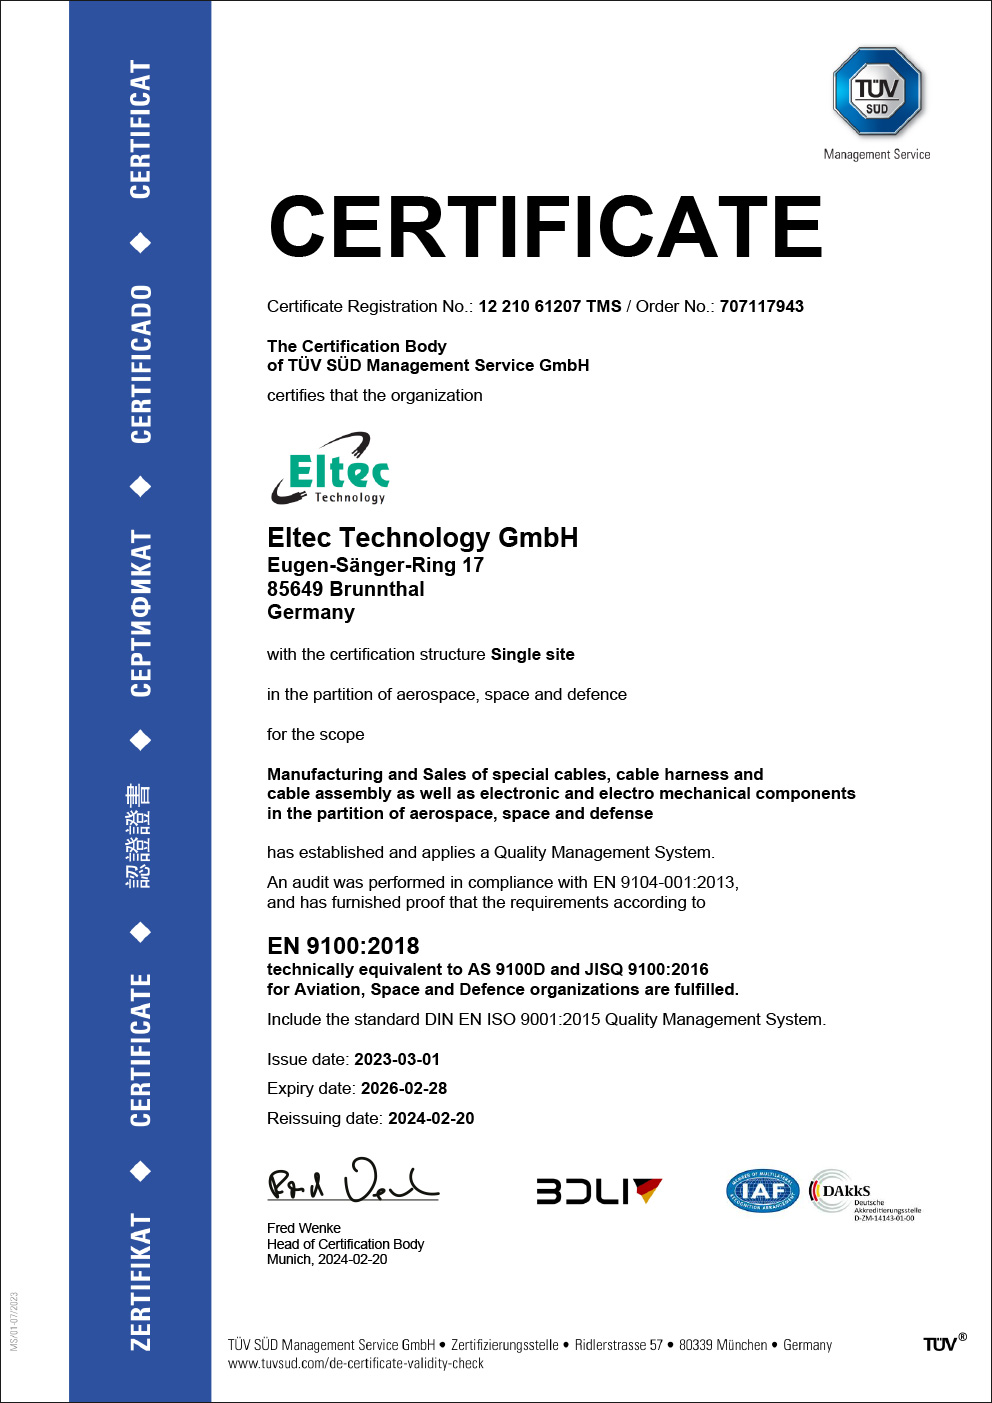 EN 9100 certified